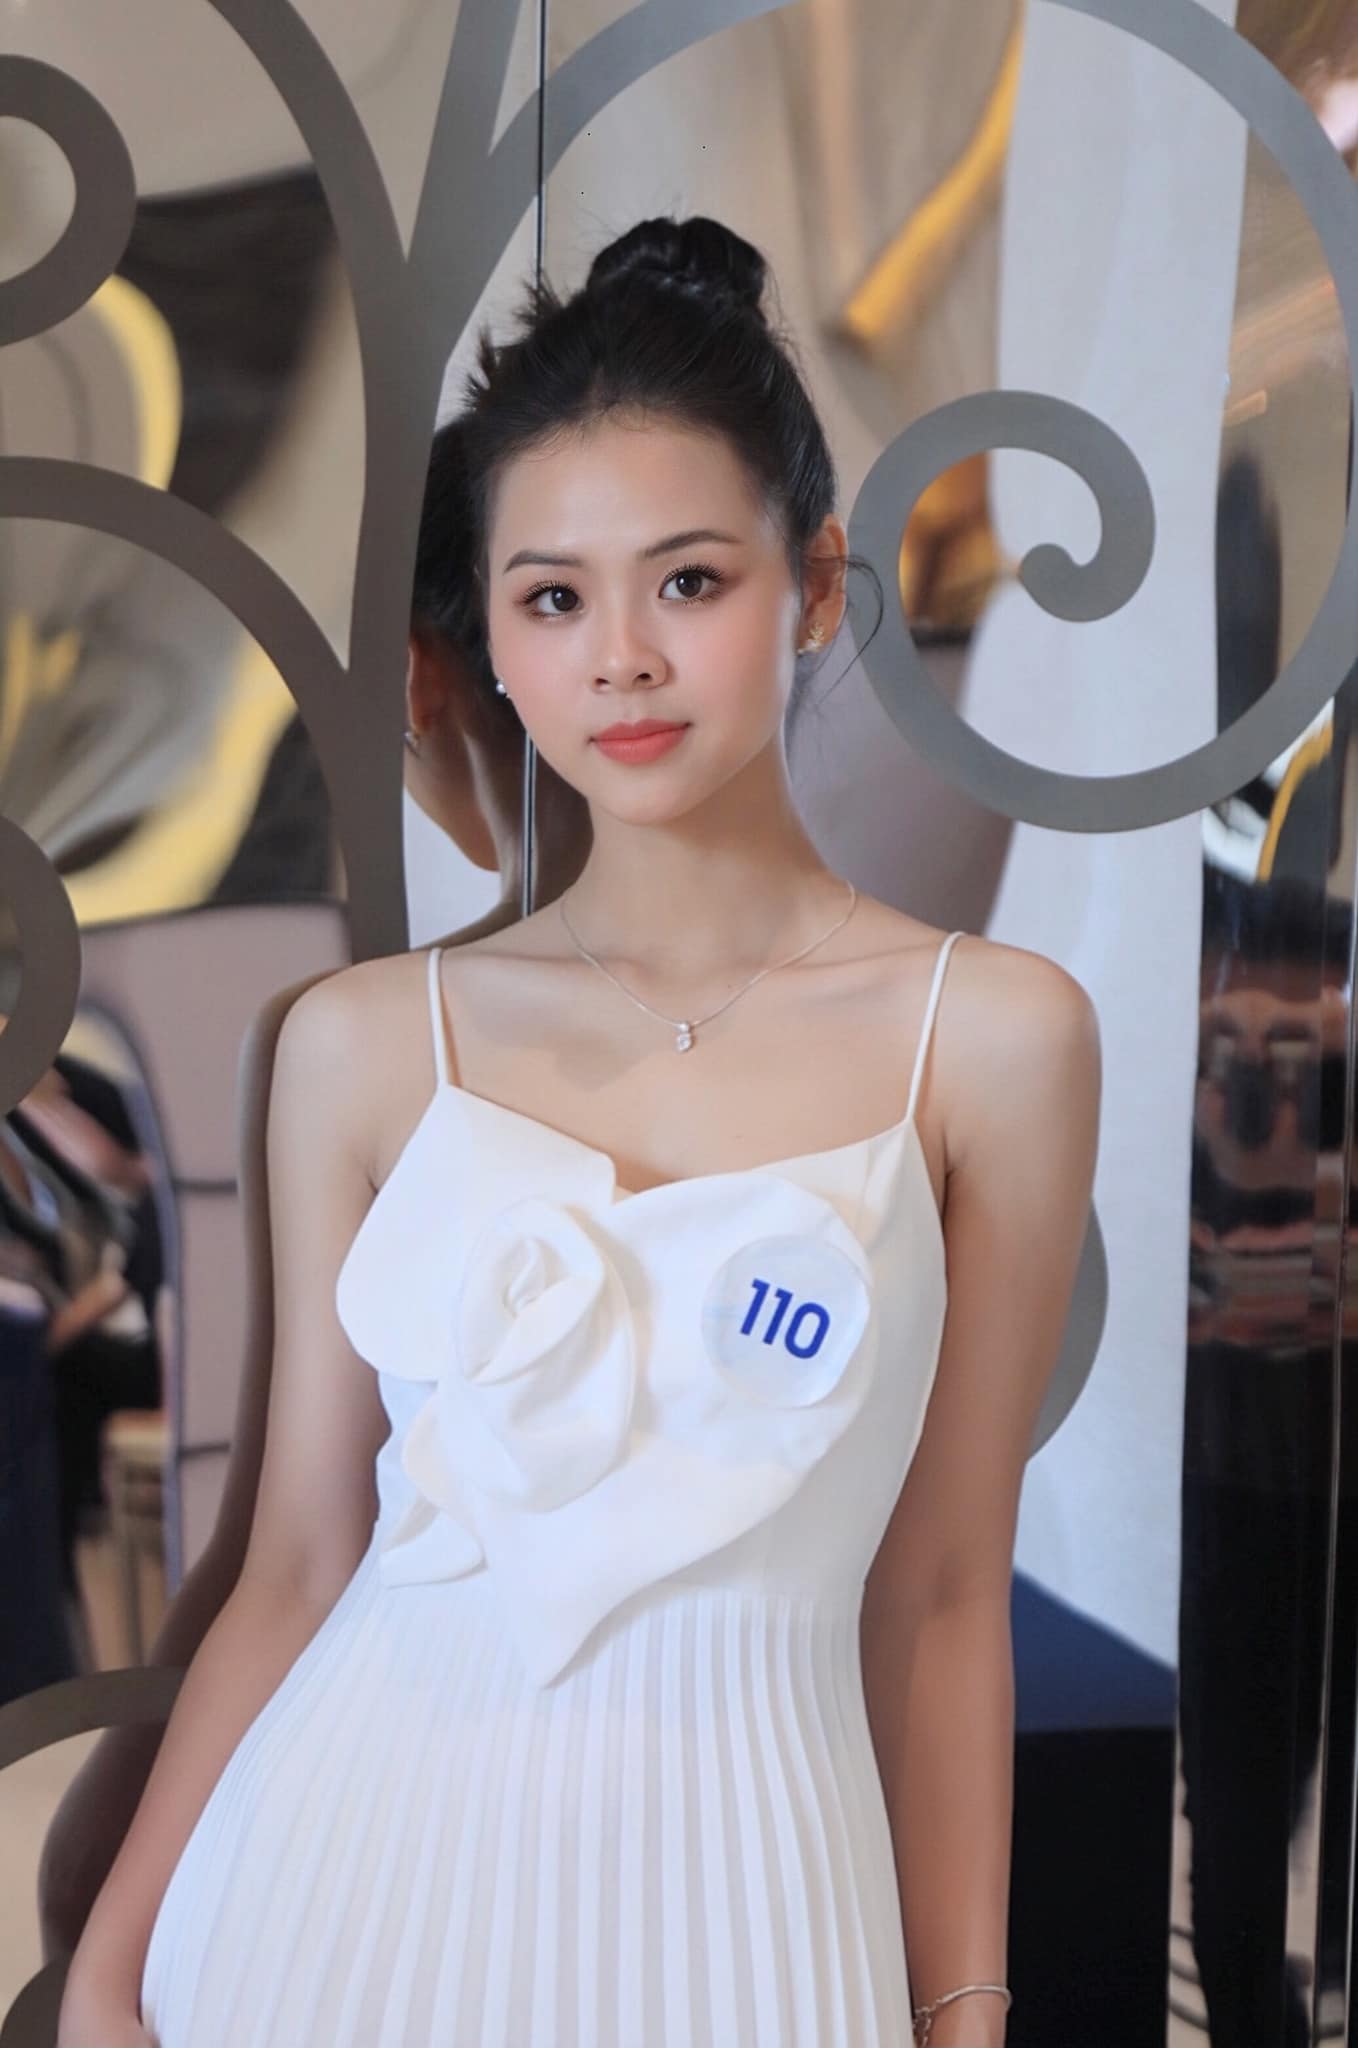 Nhan sắc xinh đẹp mong manh của Hoa khôi bóng chuyền vào chung khảo Miss World Vietnam 2023 - Ảnh 1.